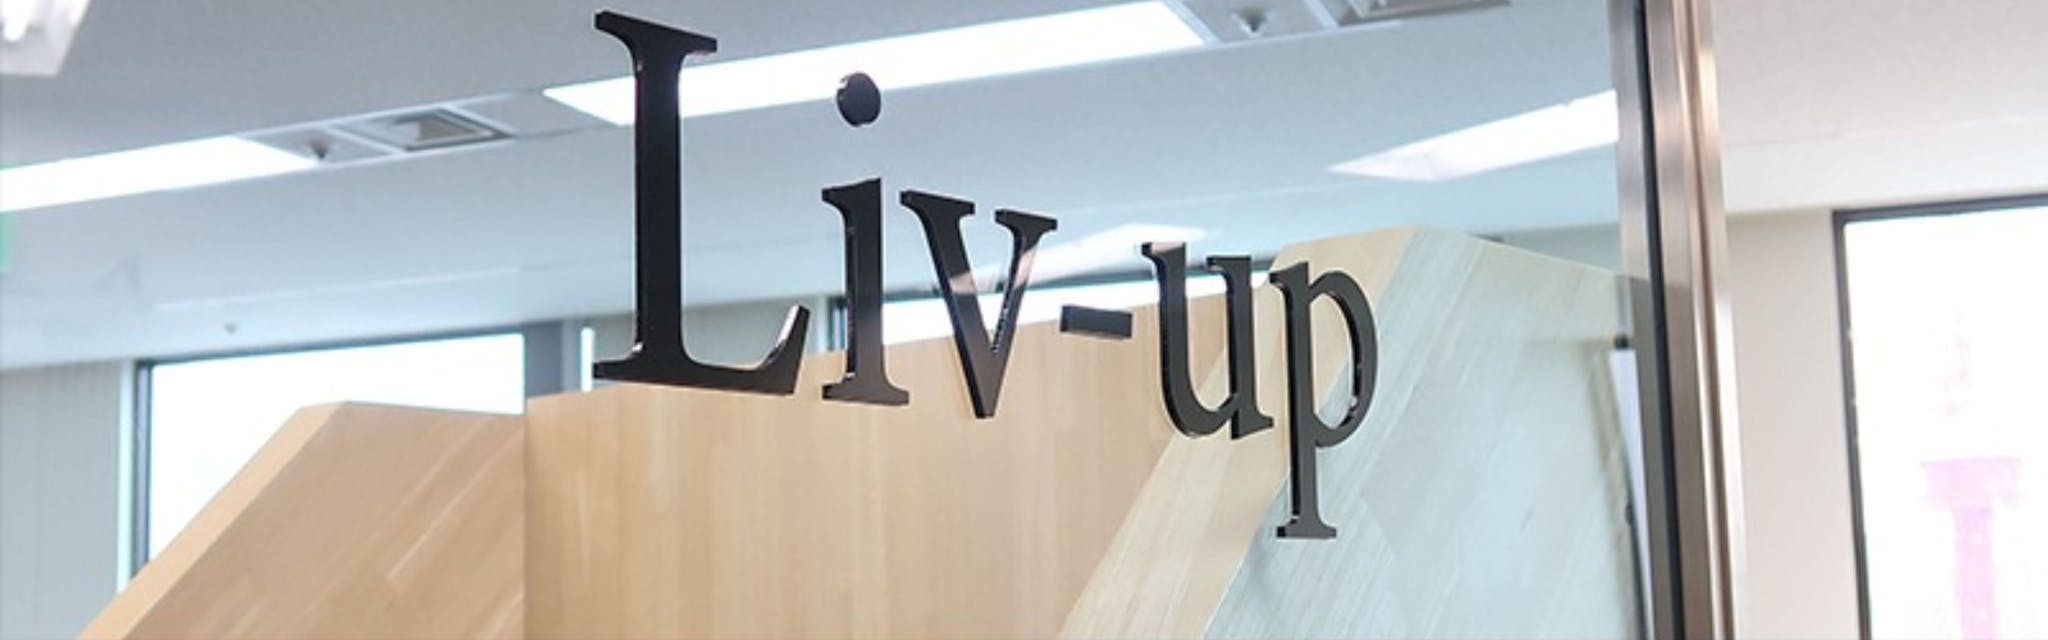 株式会社Liv-up - メイン画像